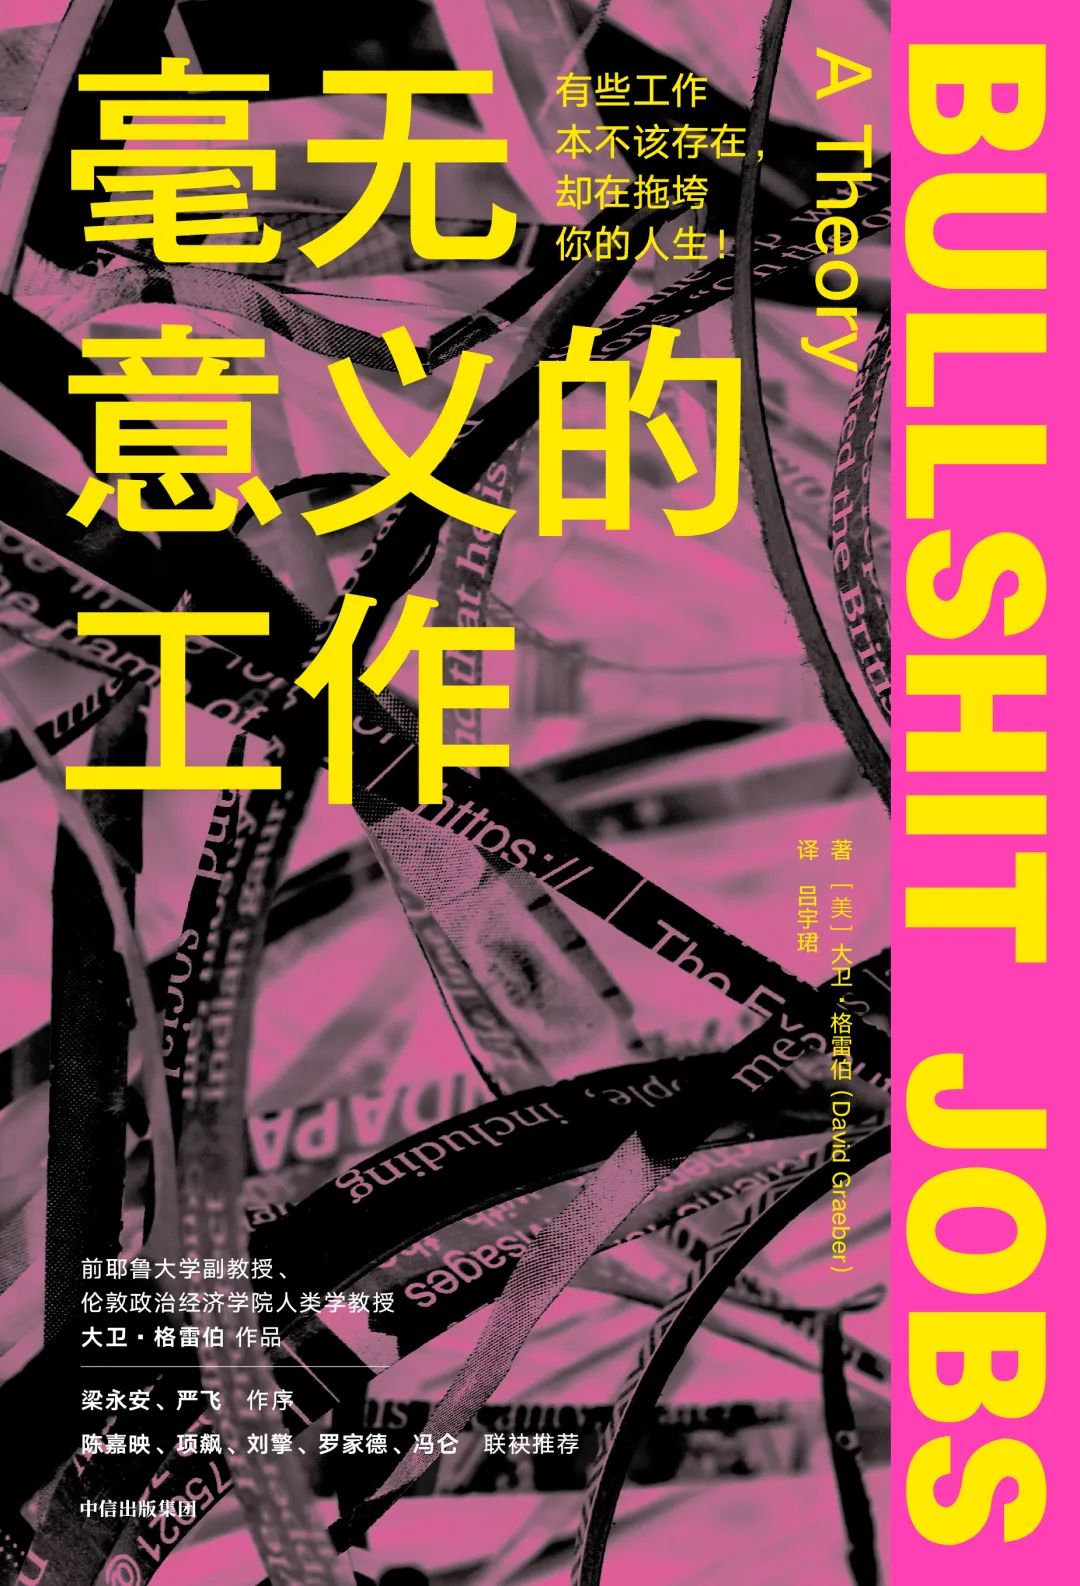 《毫无意义的工作》，作者：[美] 大卫·格雷伯 著，译者：吕宇珺，中信出版集团2022年7月。